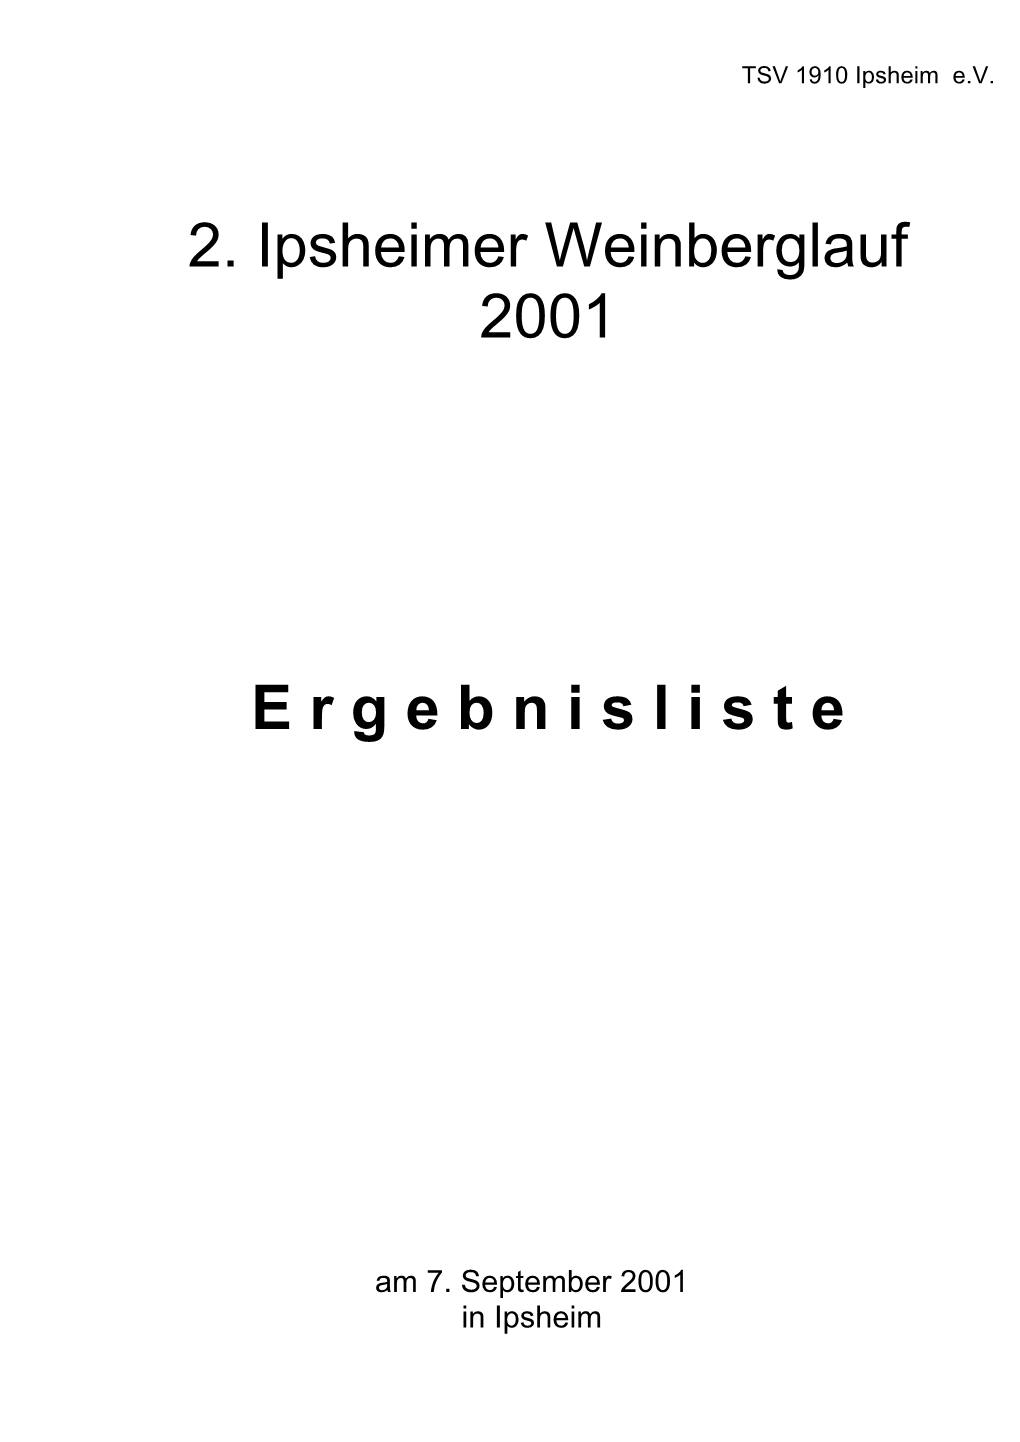 2. Ipsheimer Weinberglauf 2001 E R G E B N I S L I S